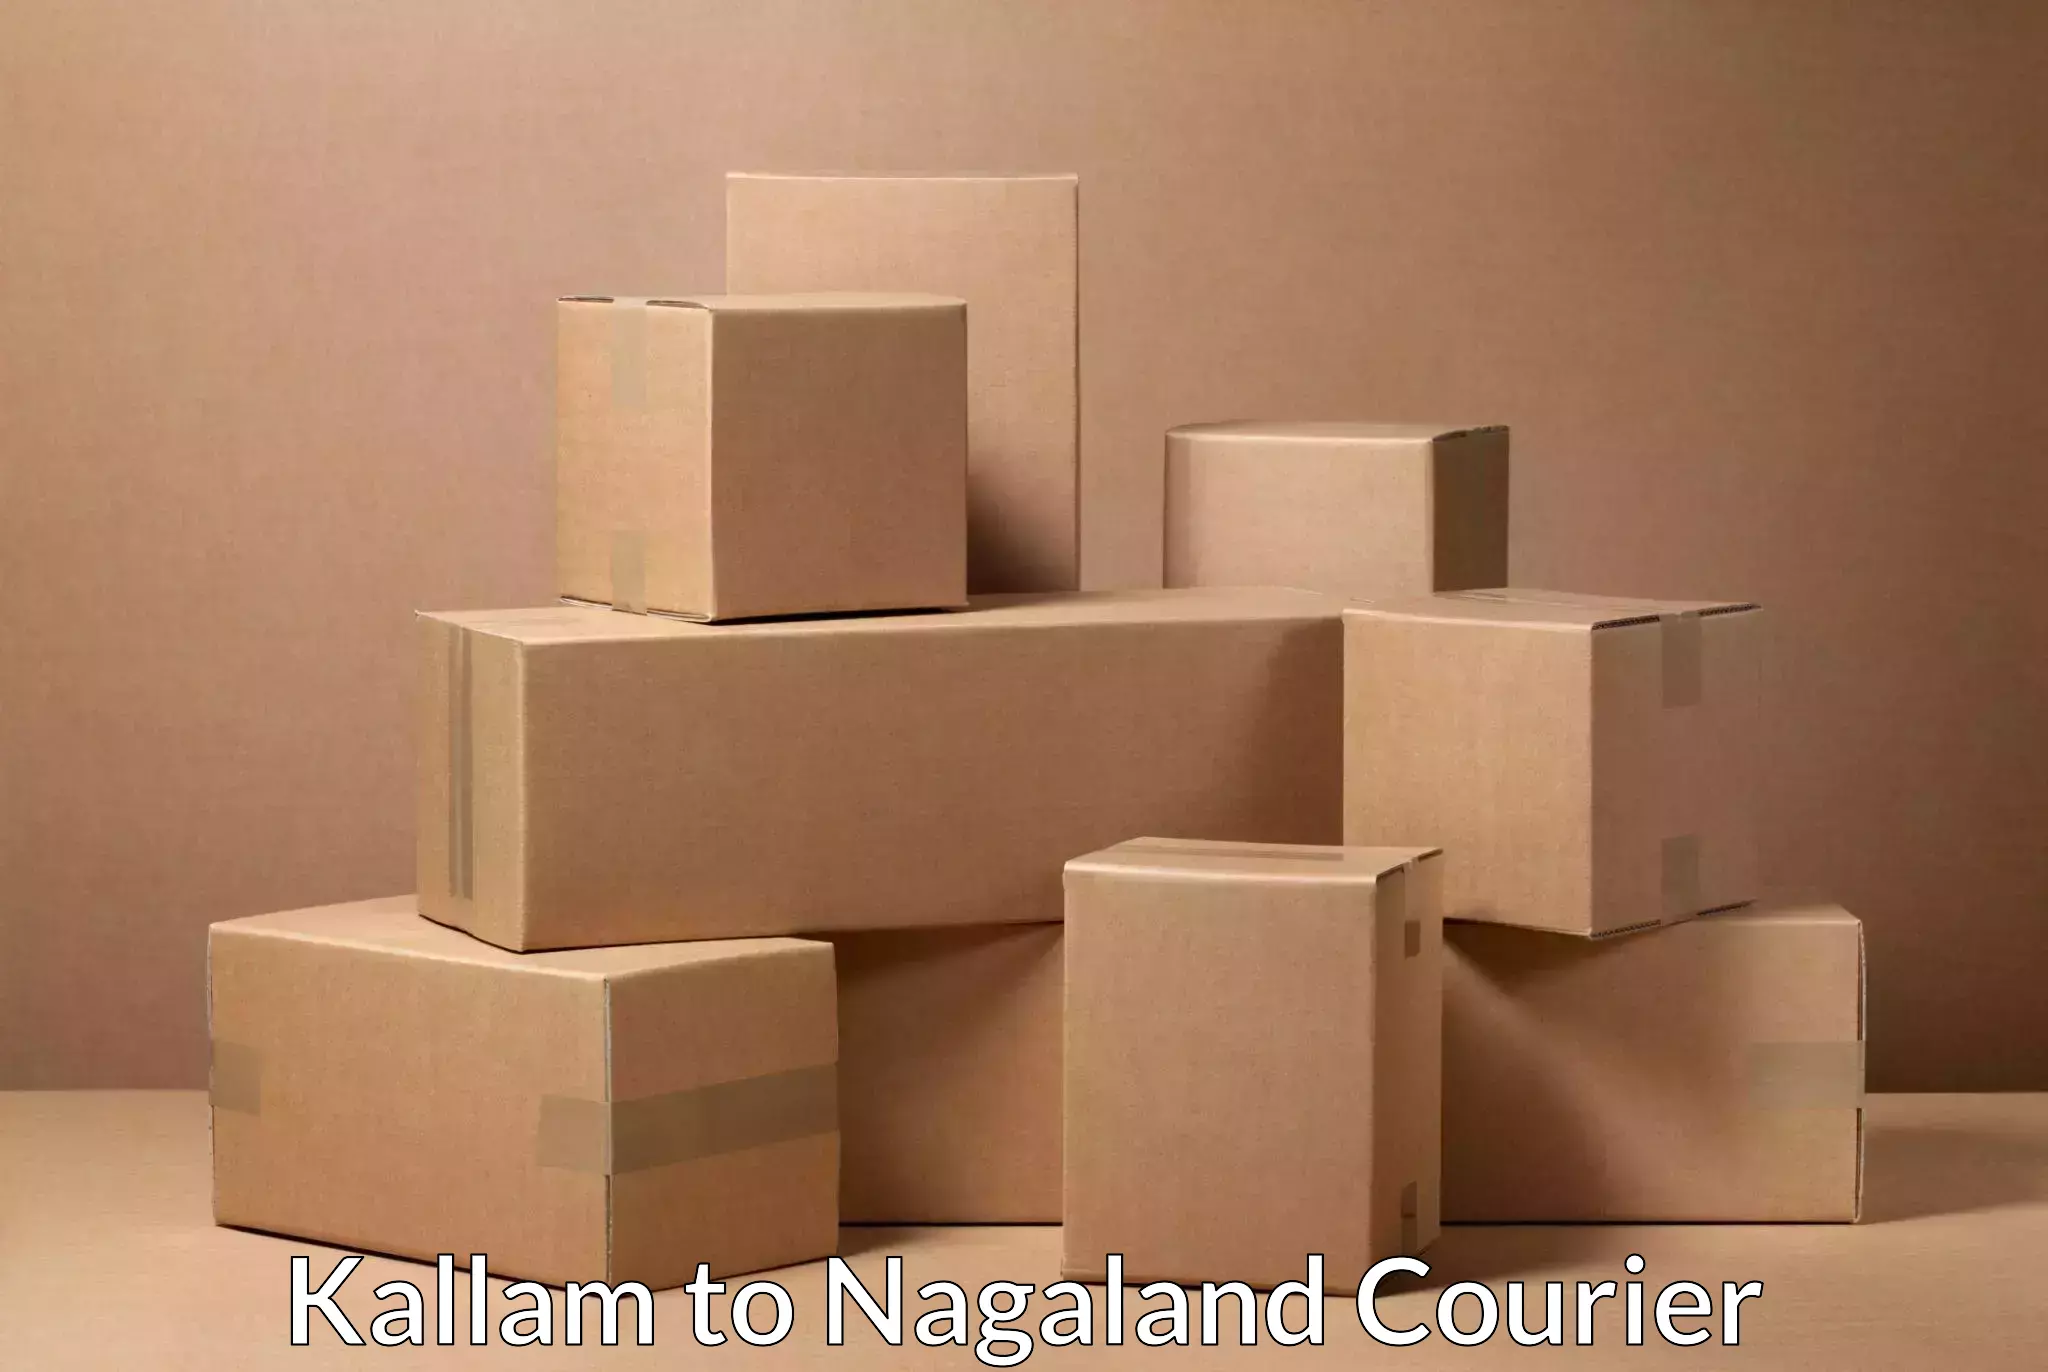 Courier service comparison Kallam to NIT Nagaland